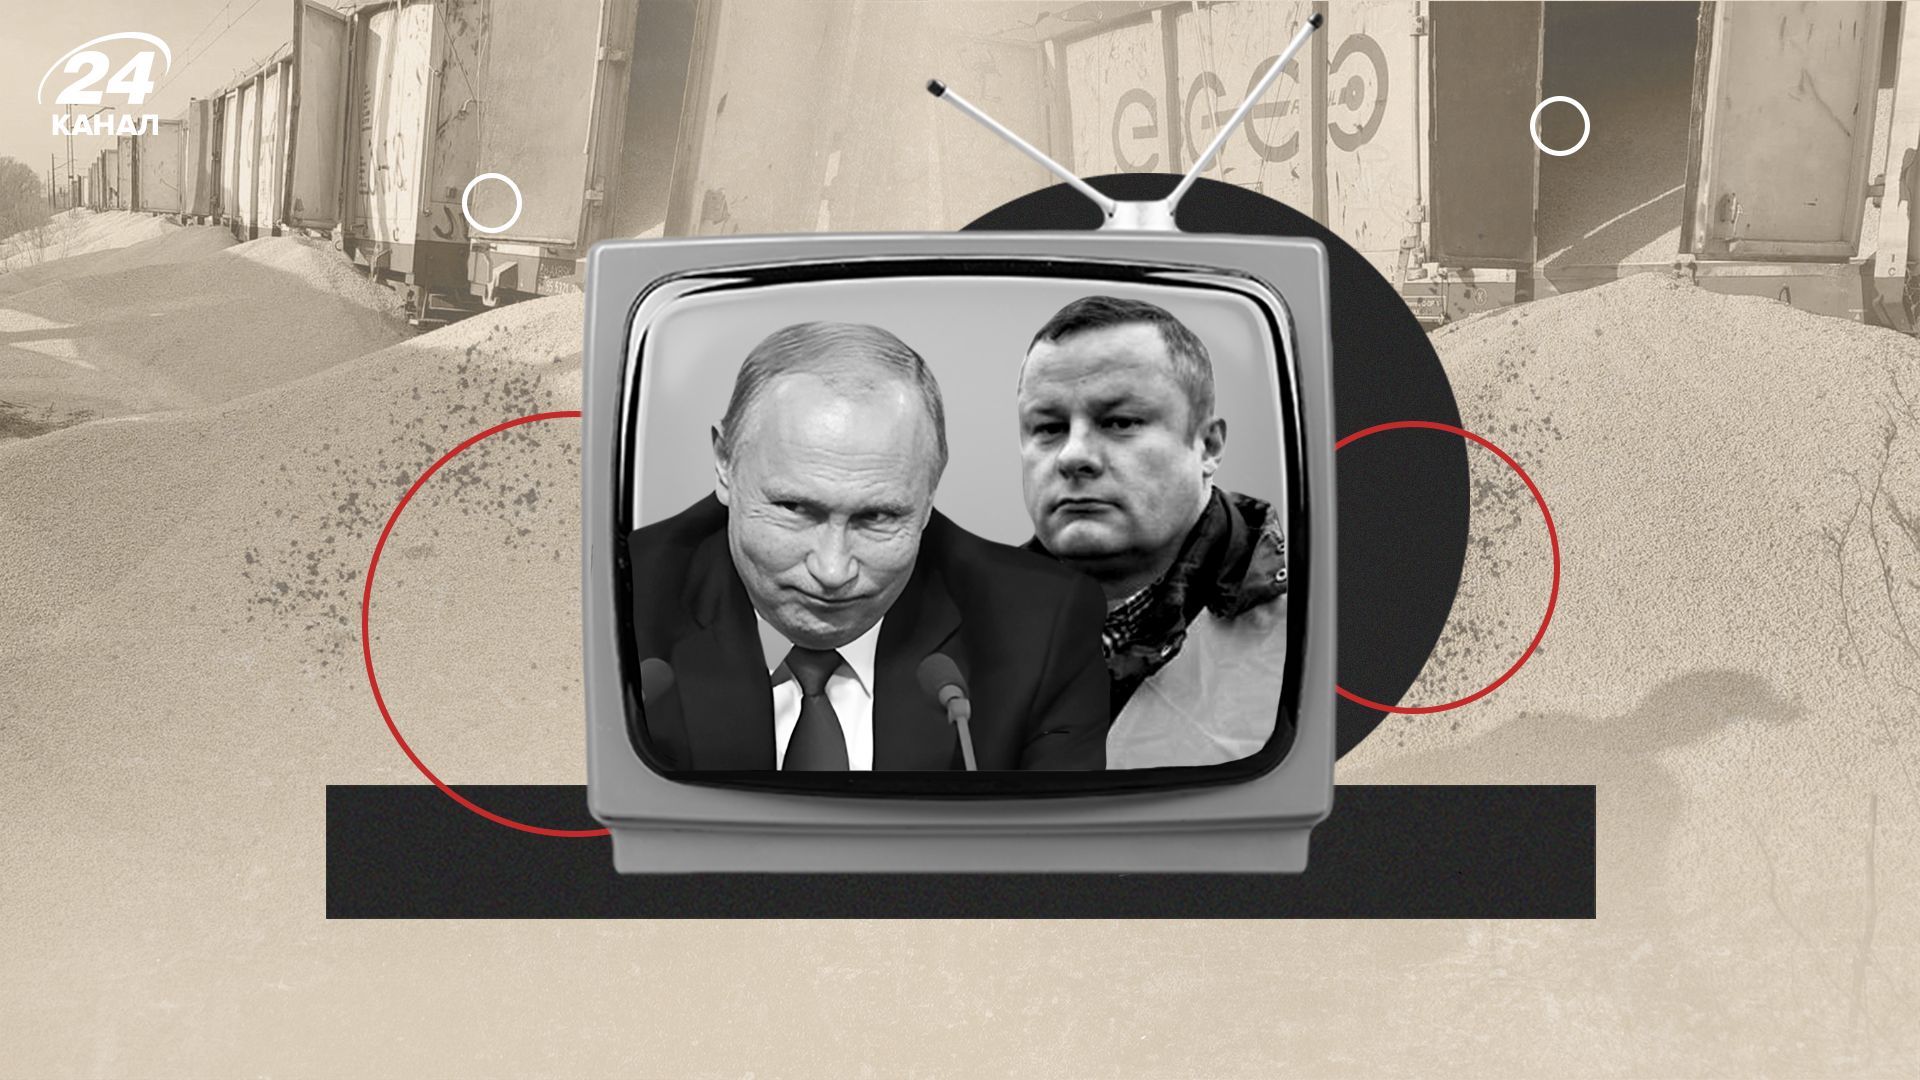 Как в Польше разгоняют фейки, истерию и роспропаганду - 24 Канал